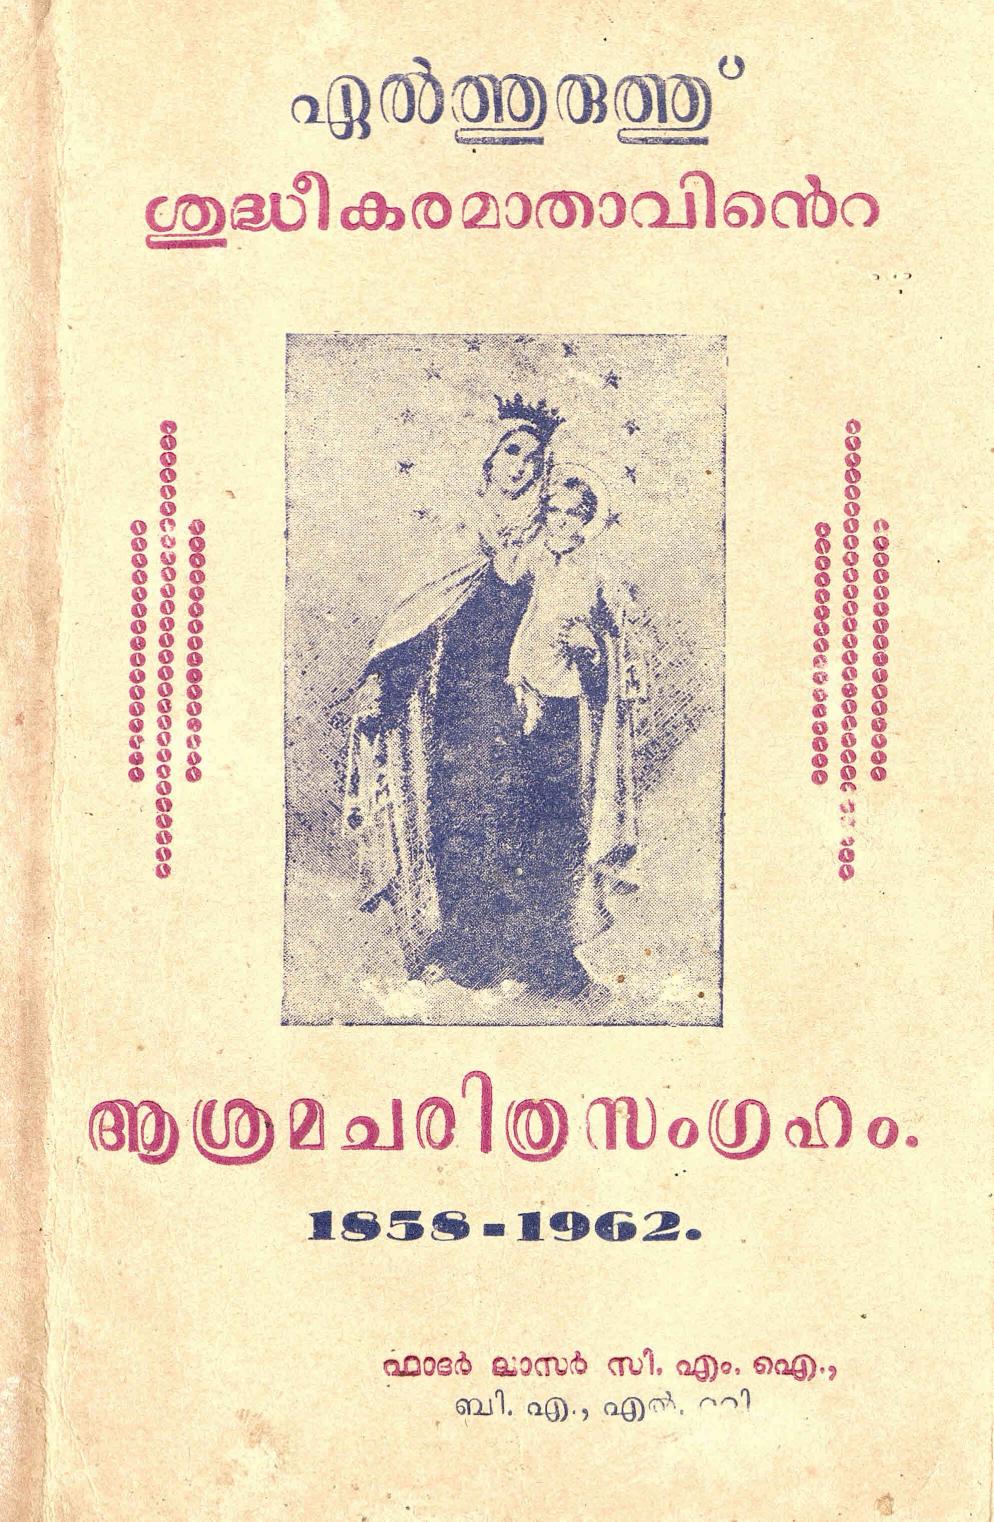  1962 - എൽത്തുരുത്ത് ശുദ്ധീകരമാതാവിൻ്റെ ആശ്രമ ചരിത്ര സംഗ്രഹം - ലാസർ